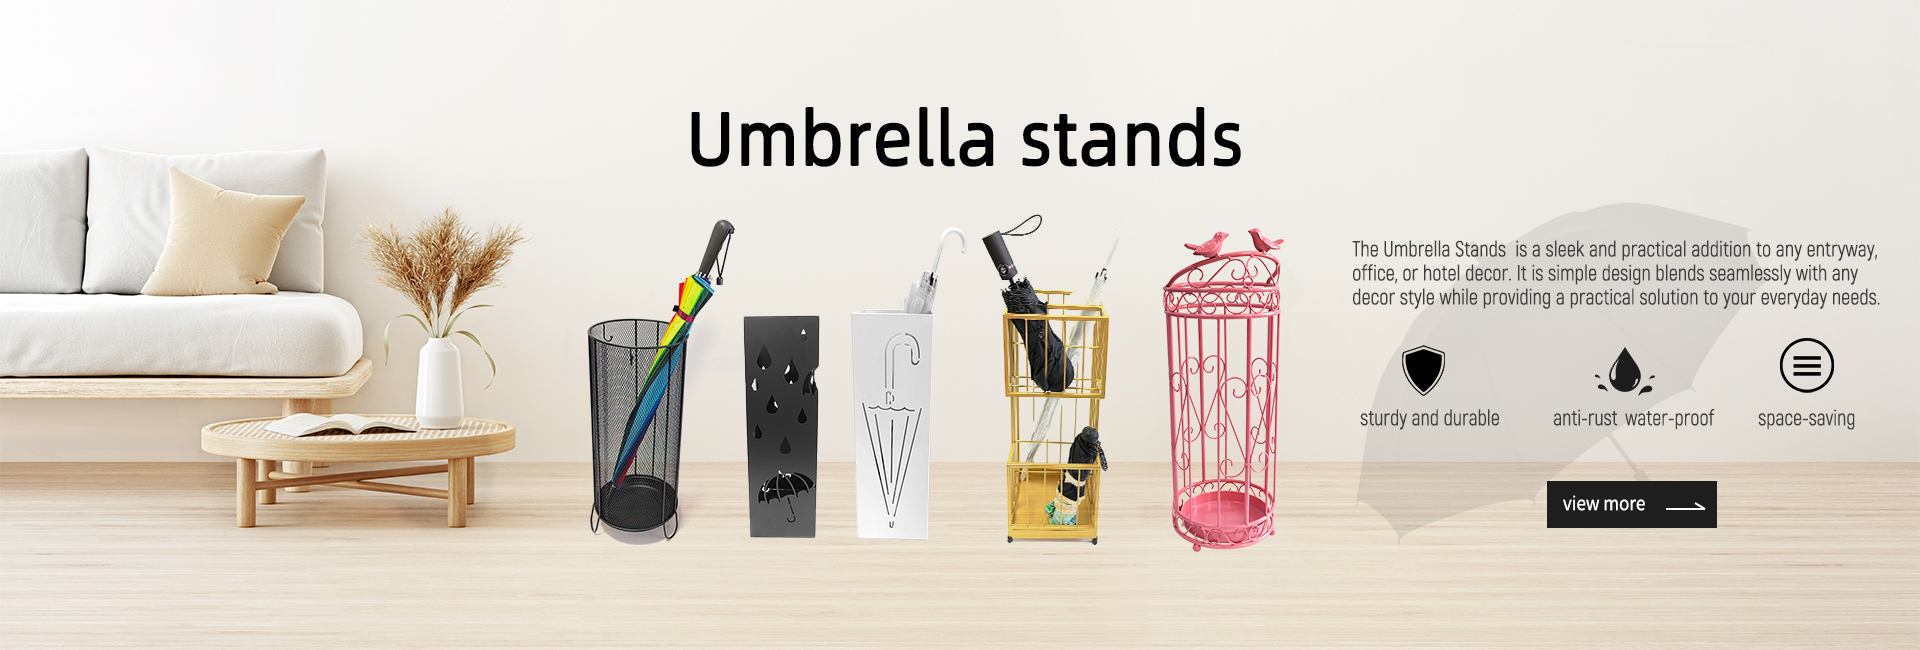 umbrella stands